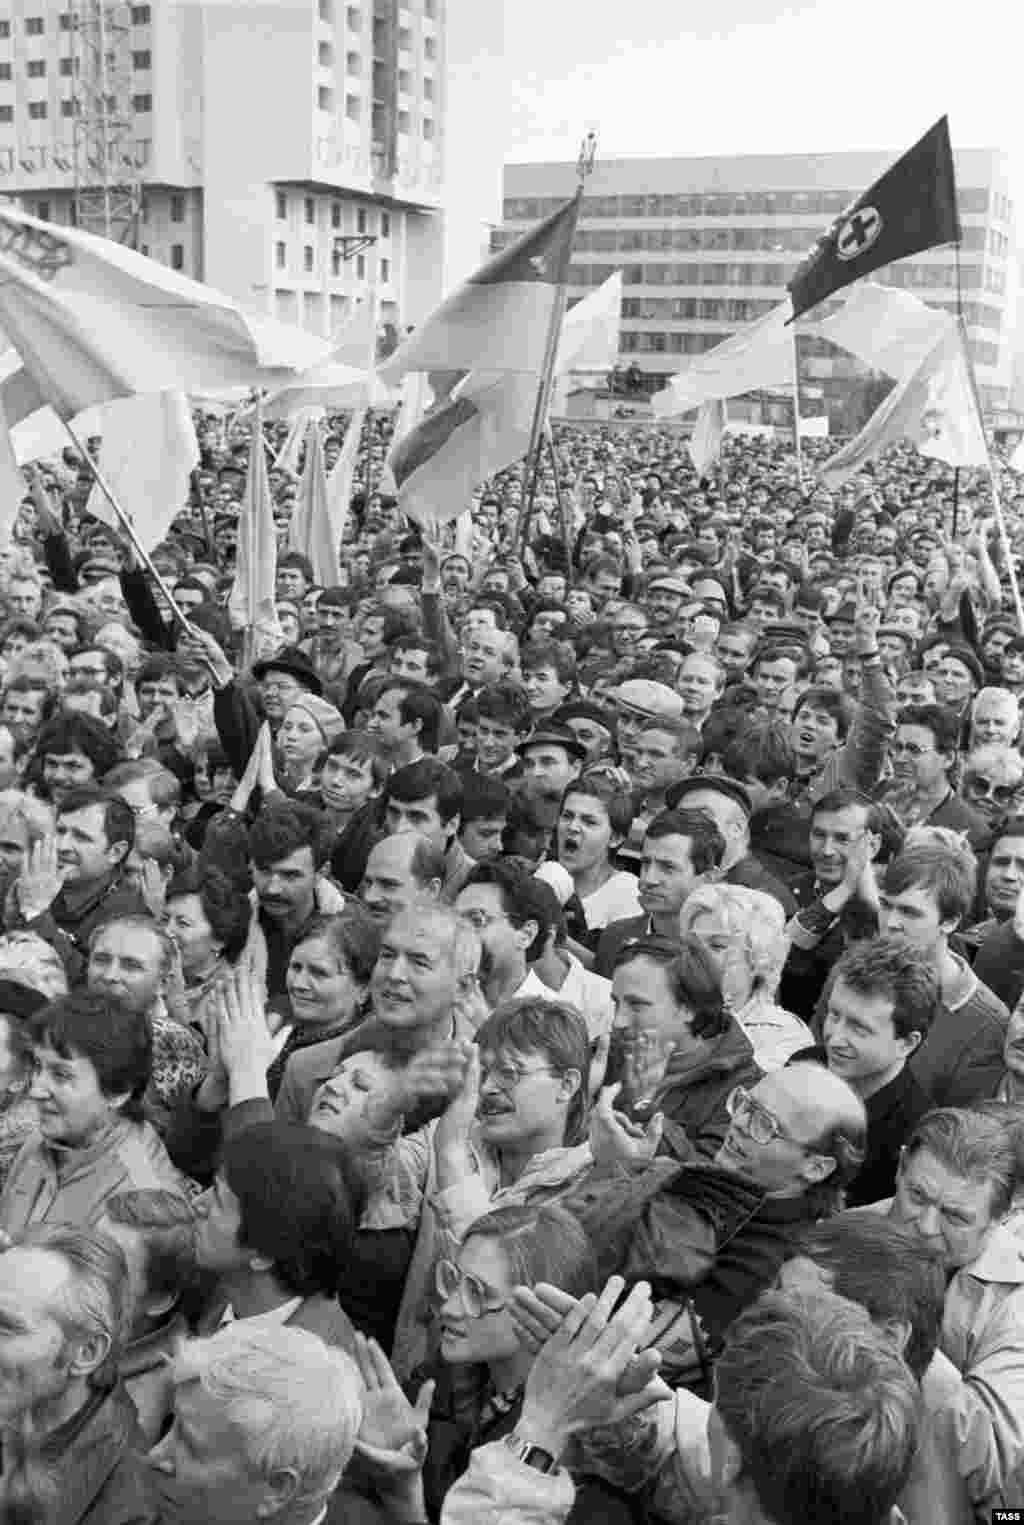 Демонстрация в Киеве, организованная Украинским народным движением, 23 октября 1989 года - Демонстрация в Киеве, организованная Украинским народным движением за перестройку в поддержку национального возрождения и независимости, 23 октября 1989 года